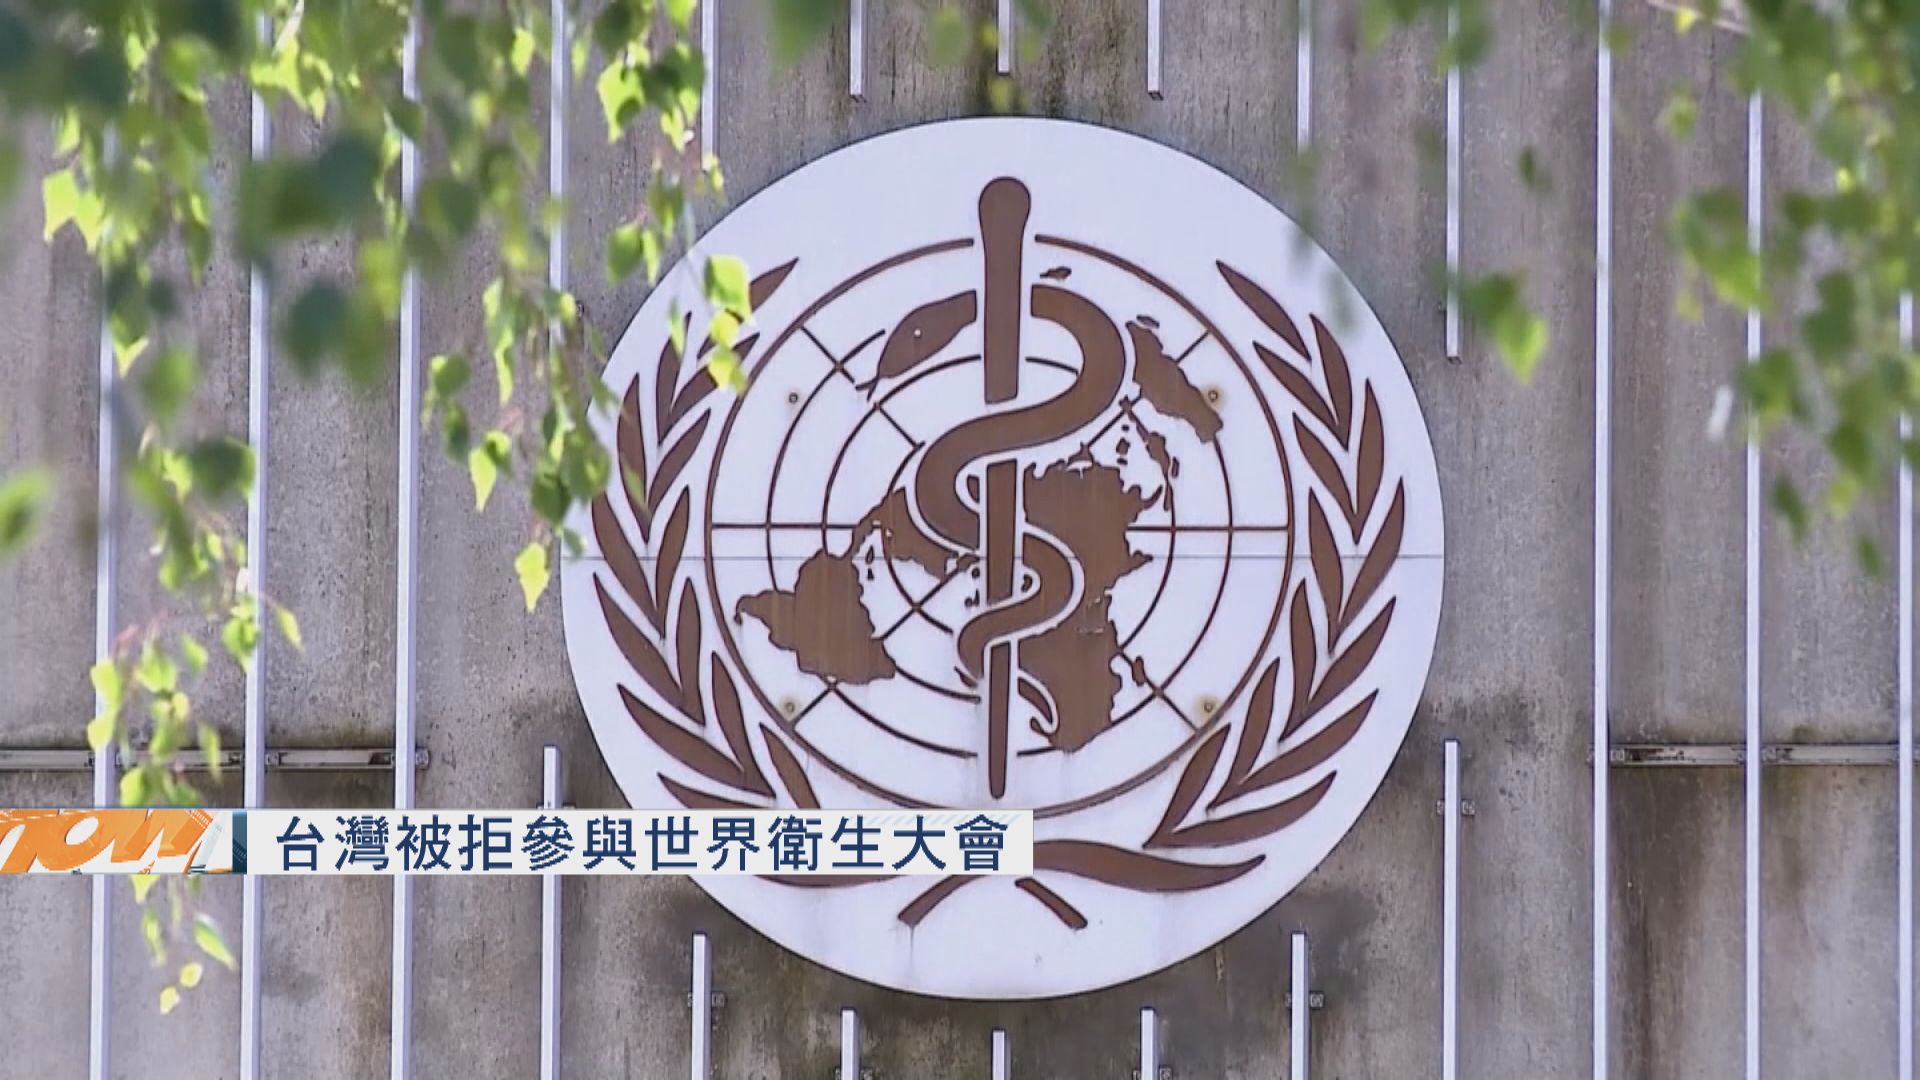 台指北京干預下被拒參與世界衛生大會